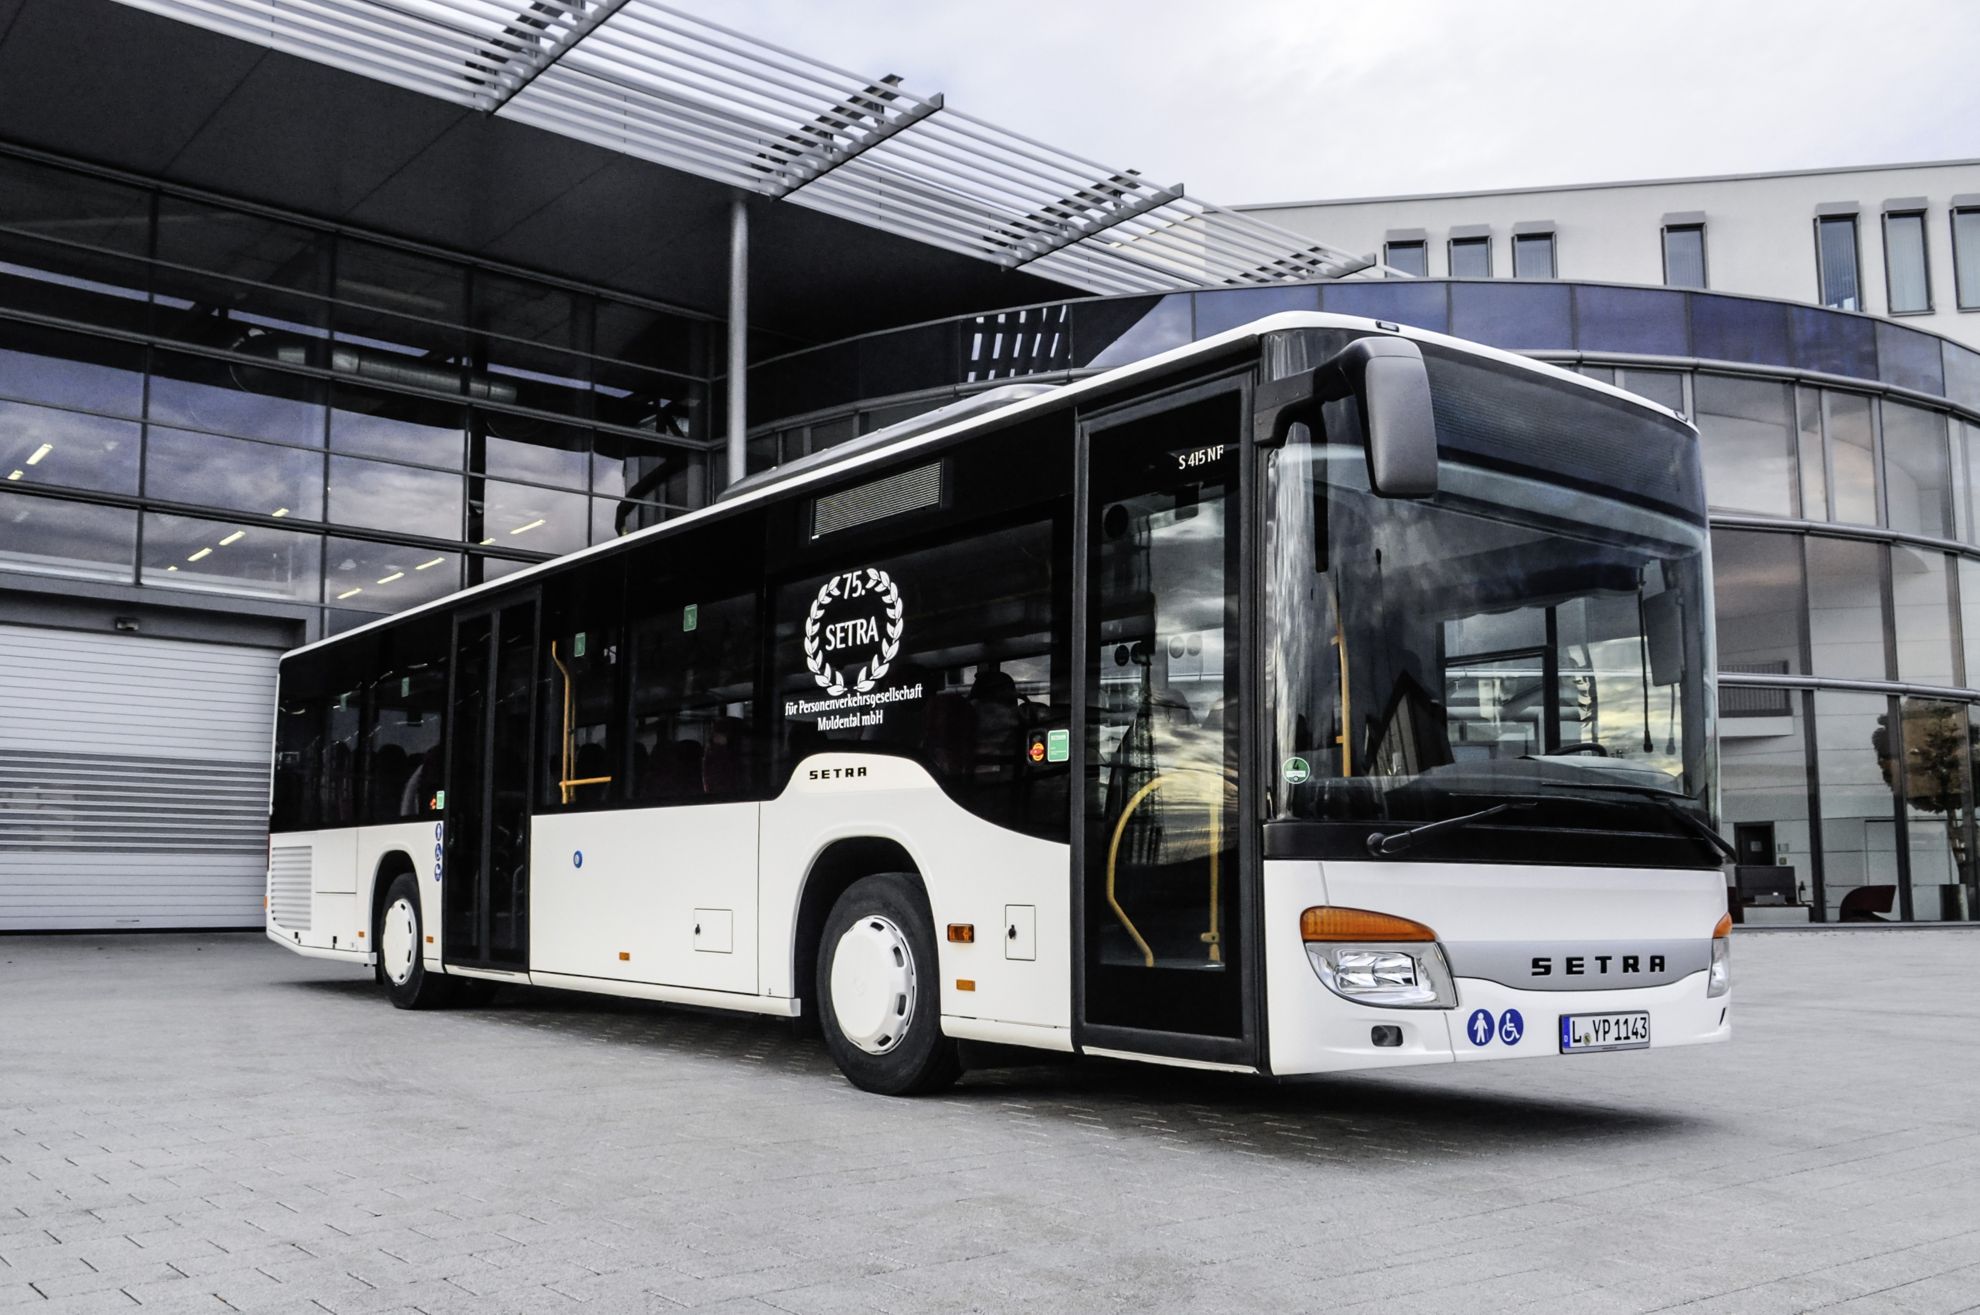 Setra Busses: Muldental Passenger Transport